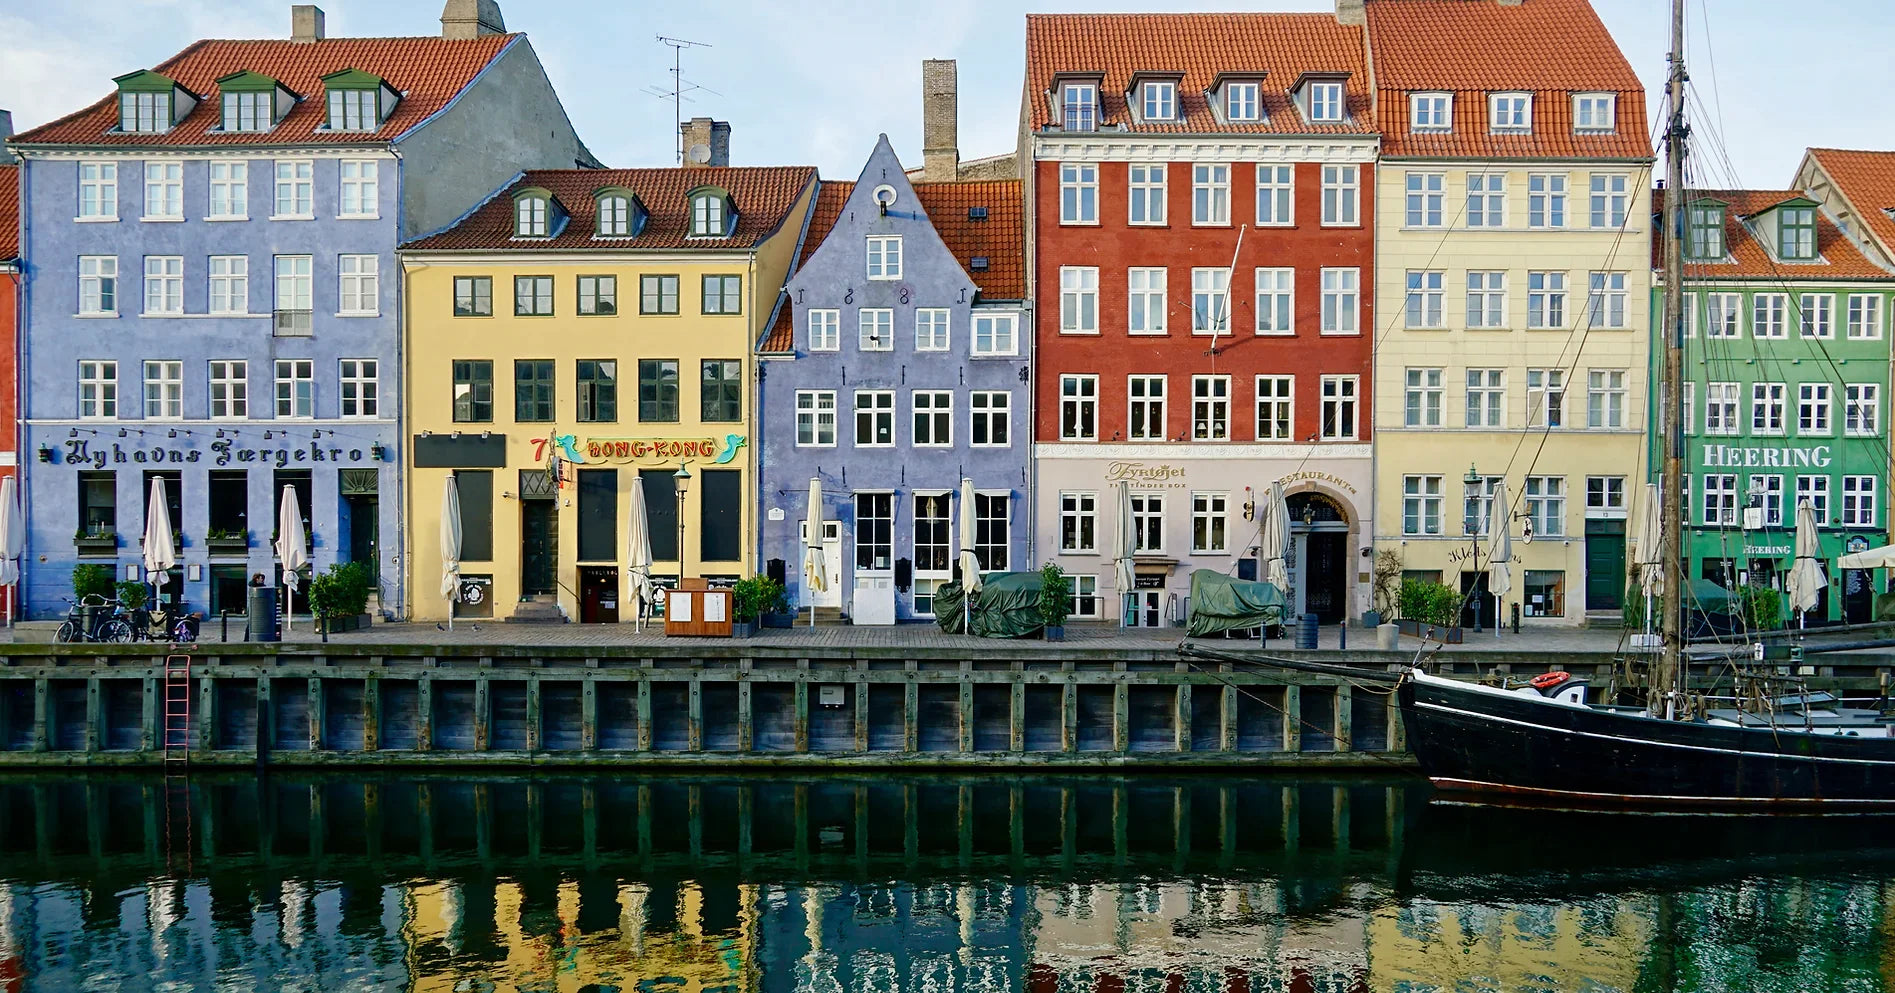 Copenhagen (Nyhavn) - An outdoor escape room